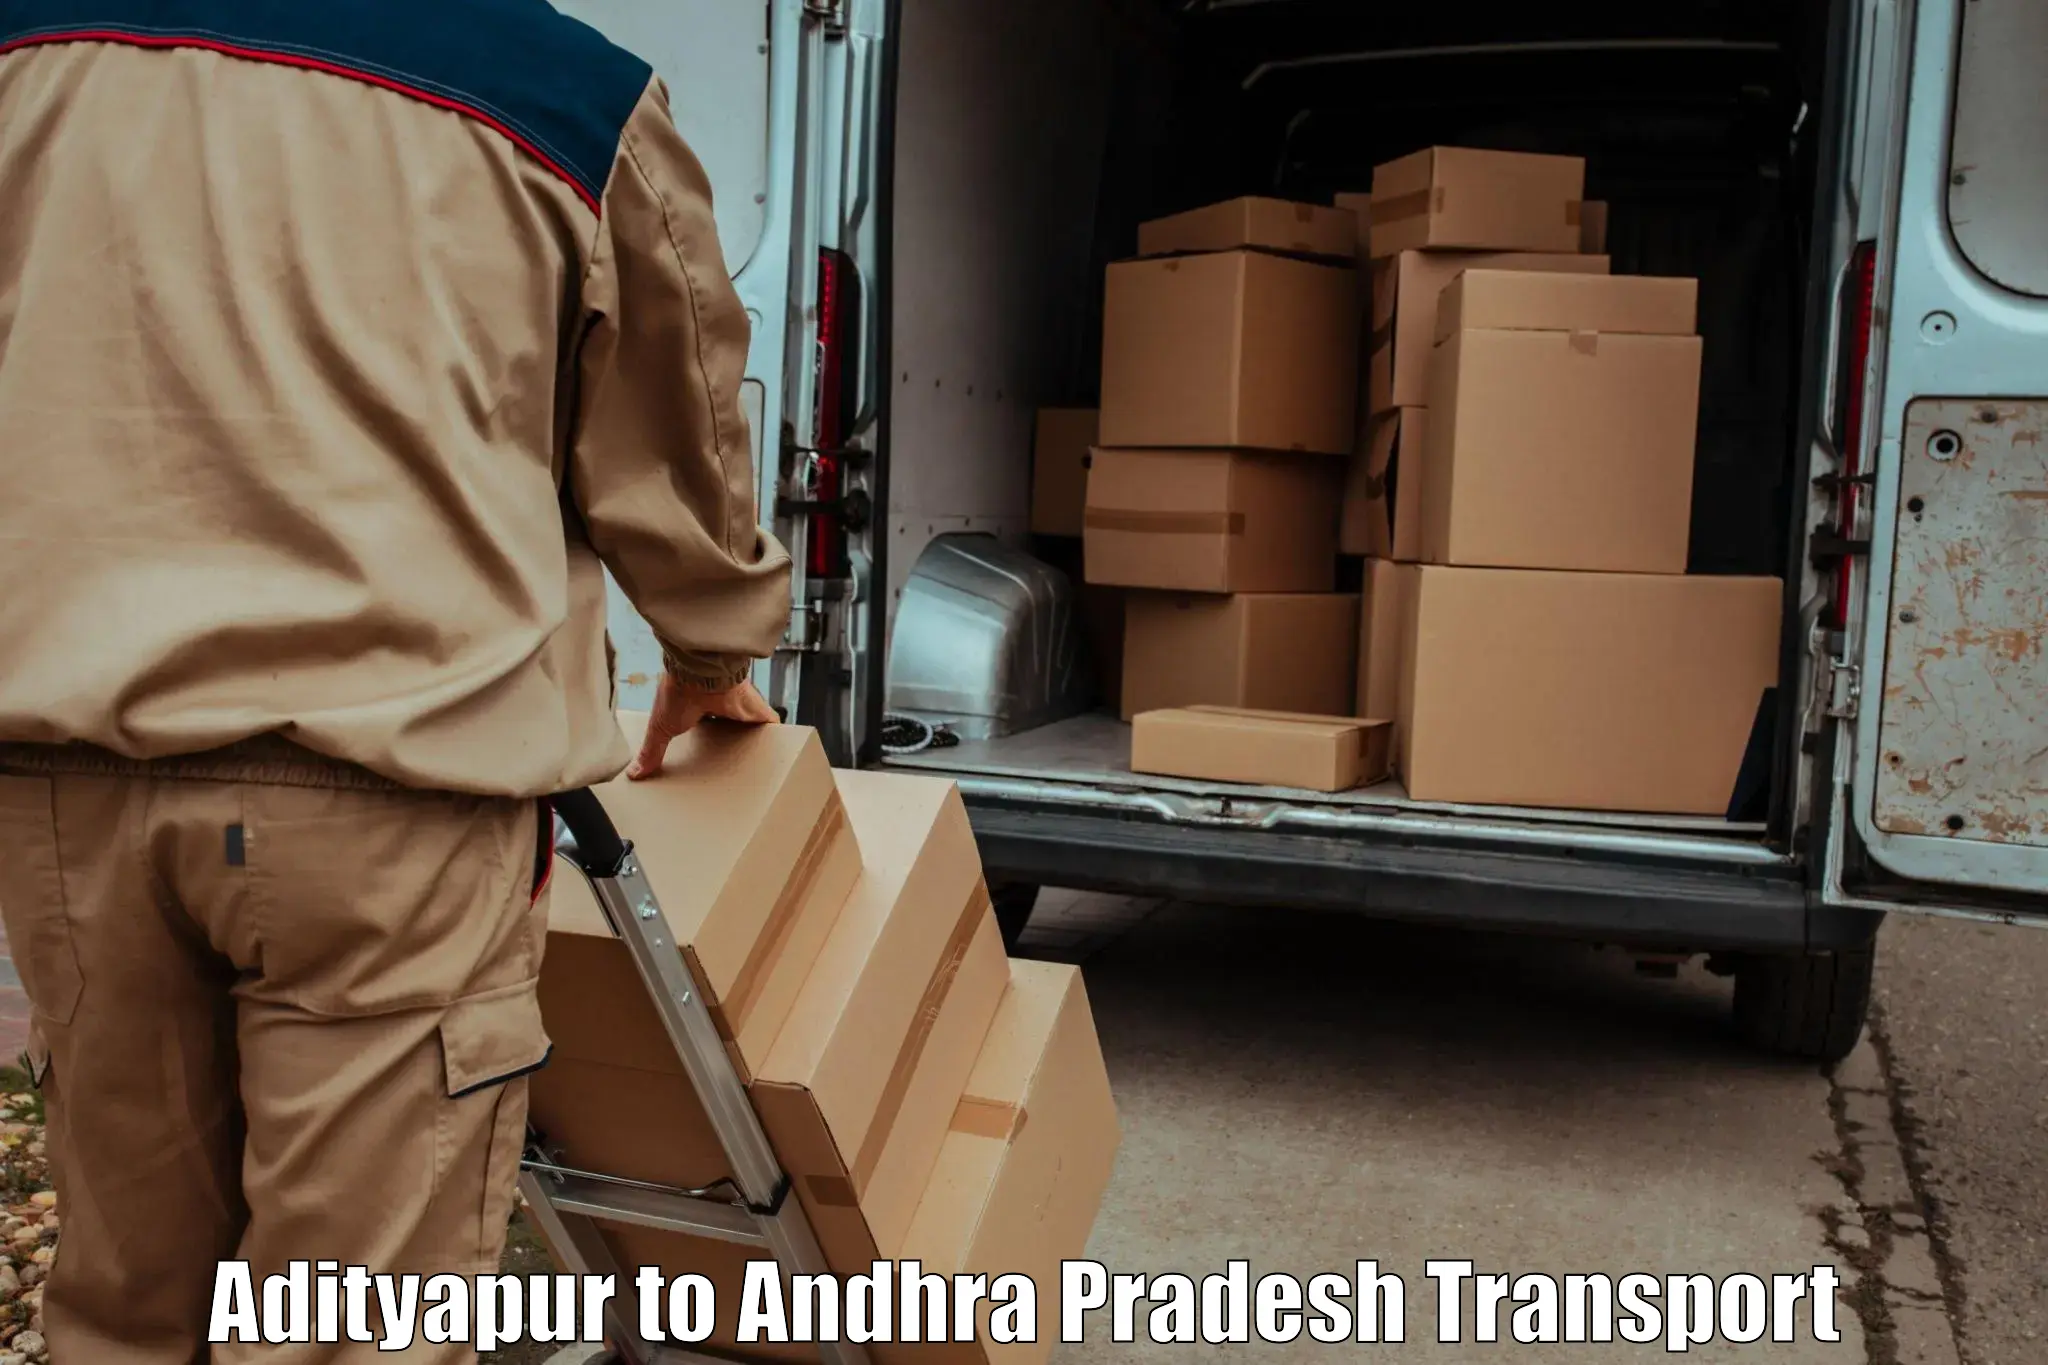 Daily transport service Adityapur to Madakasira